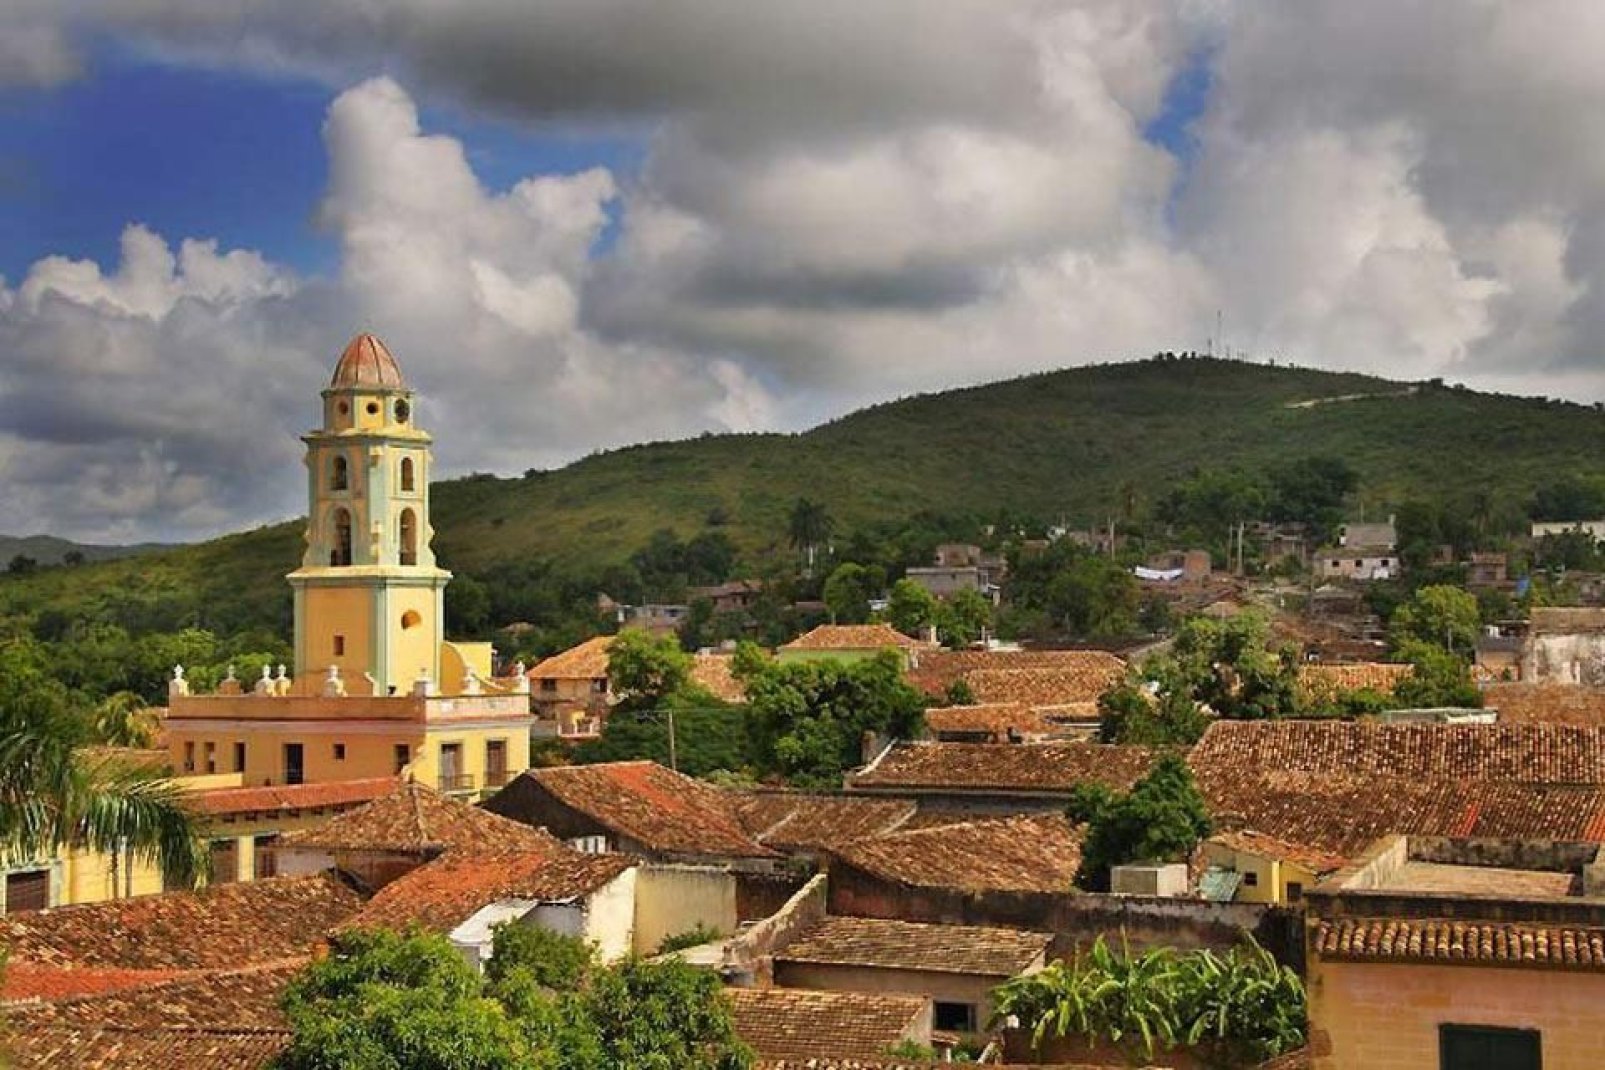 Die Stadt Trinidad wurde zum Weltkulturerbe der UNESCO erklärt und bezaubert Reisende aus aller Welt mit ihren malerischen Gassen und Kolonialbauten.